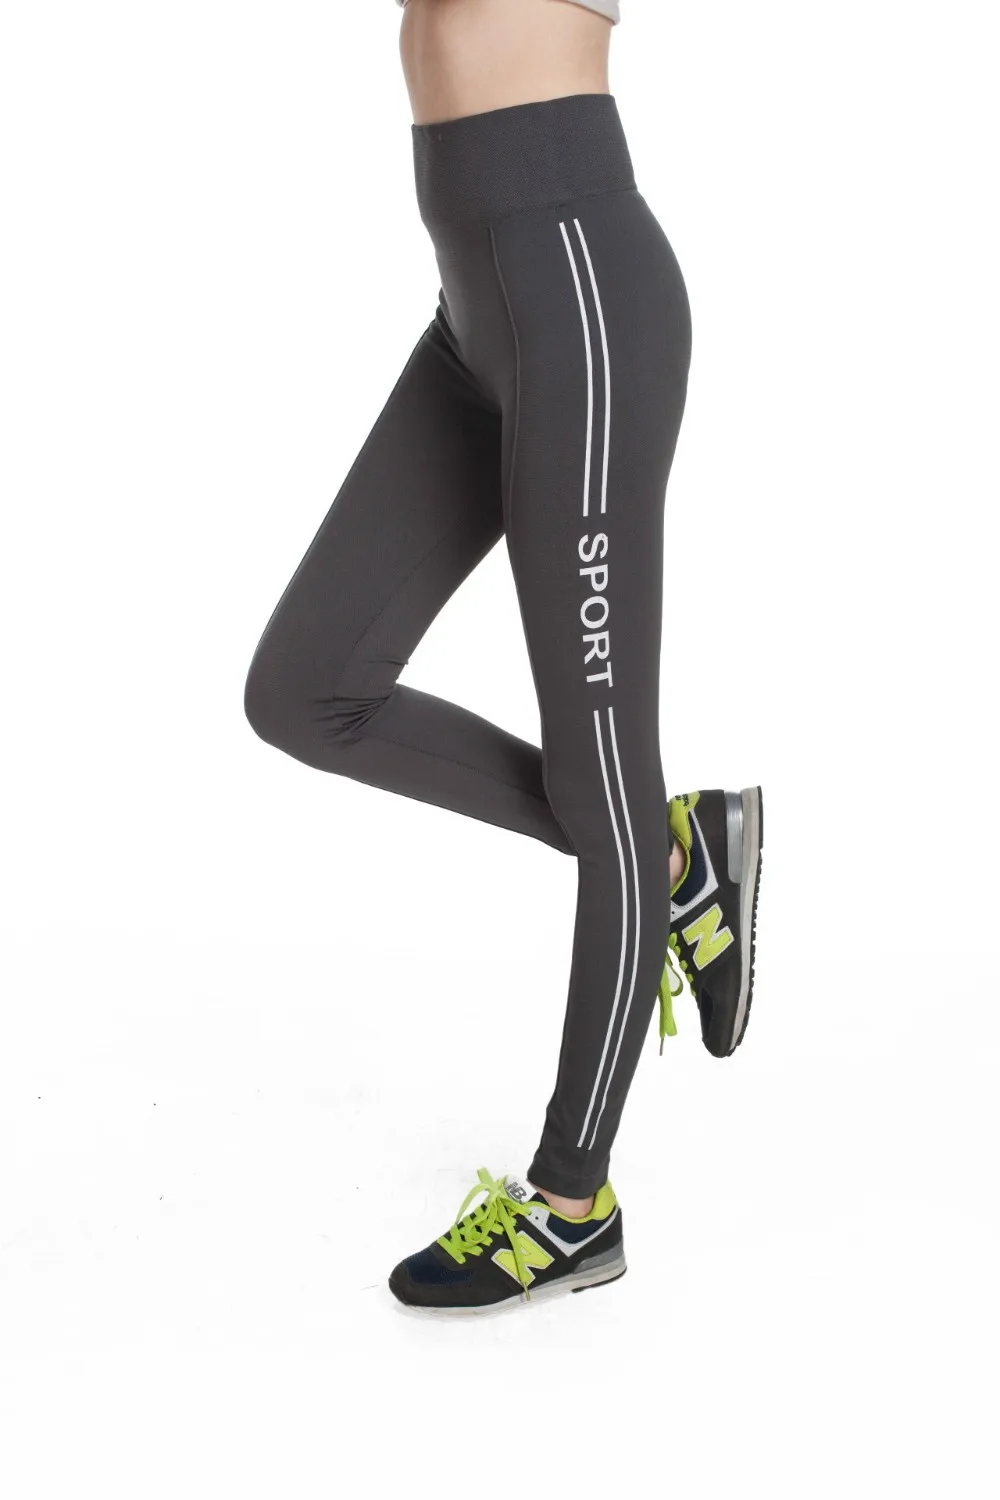 Женские спортивные Леггинсы для фитнеса, Брендовые спортивные штаны с буквенным принтом, новые обтягивающие легинсы для бега для йоги RL019